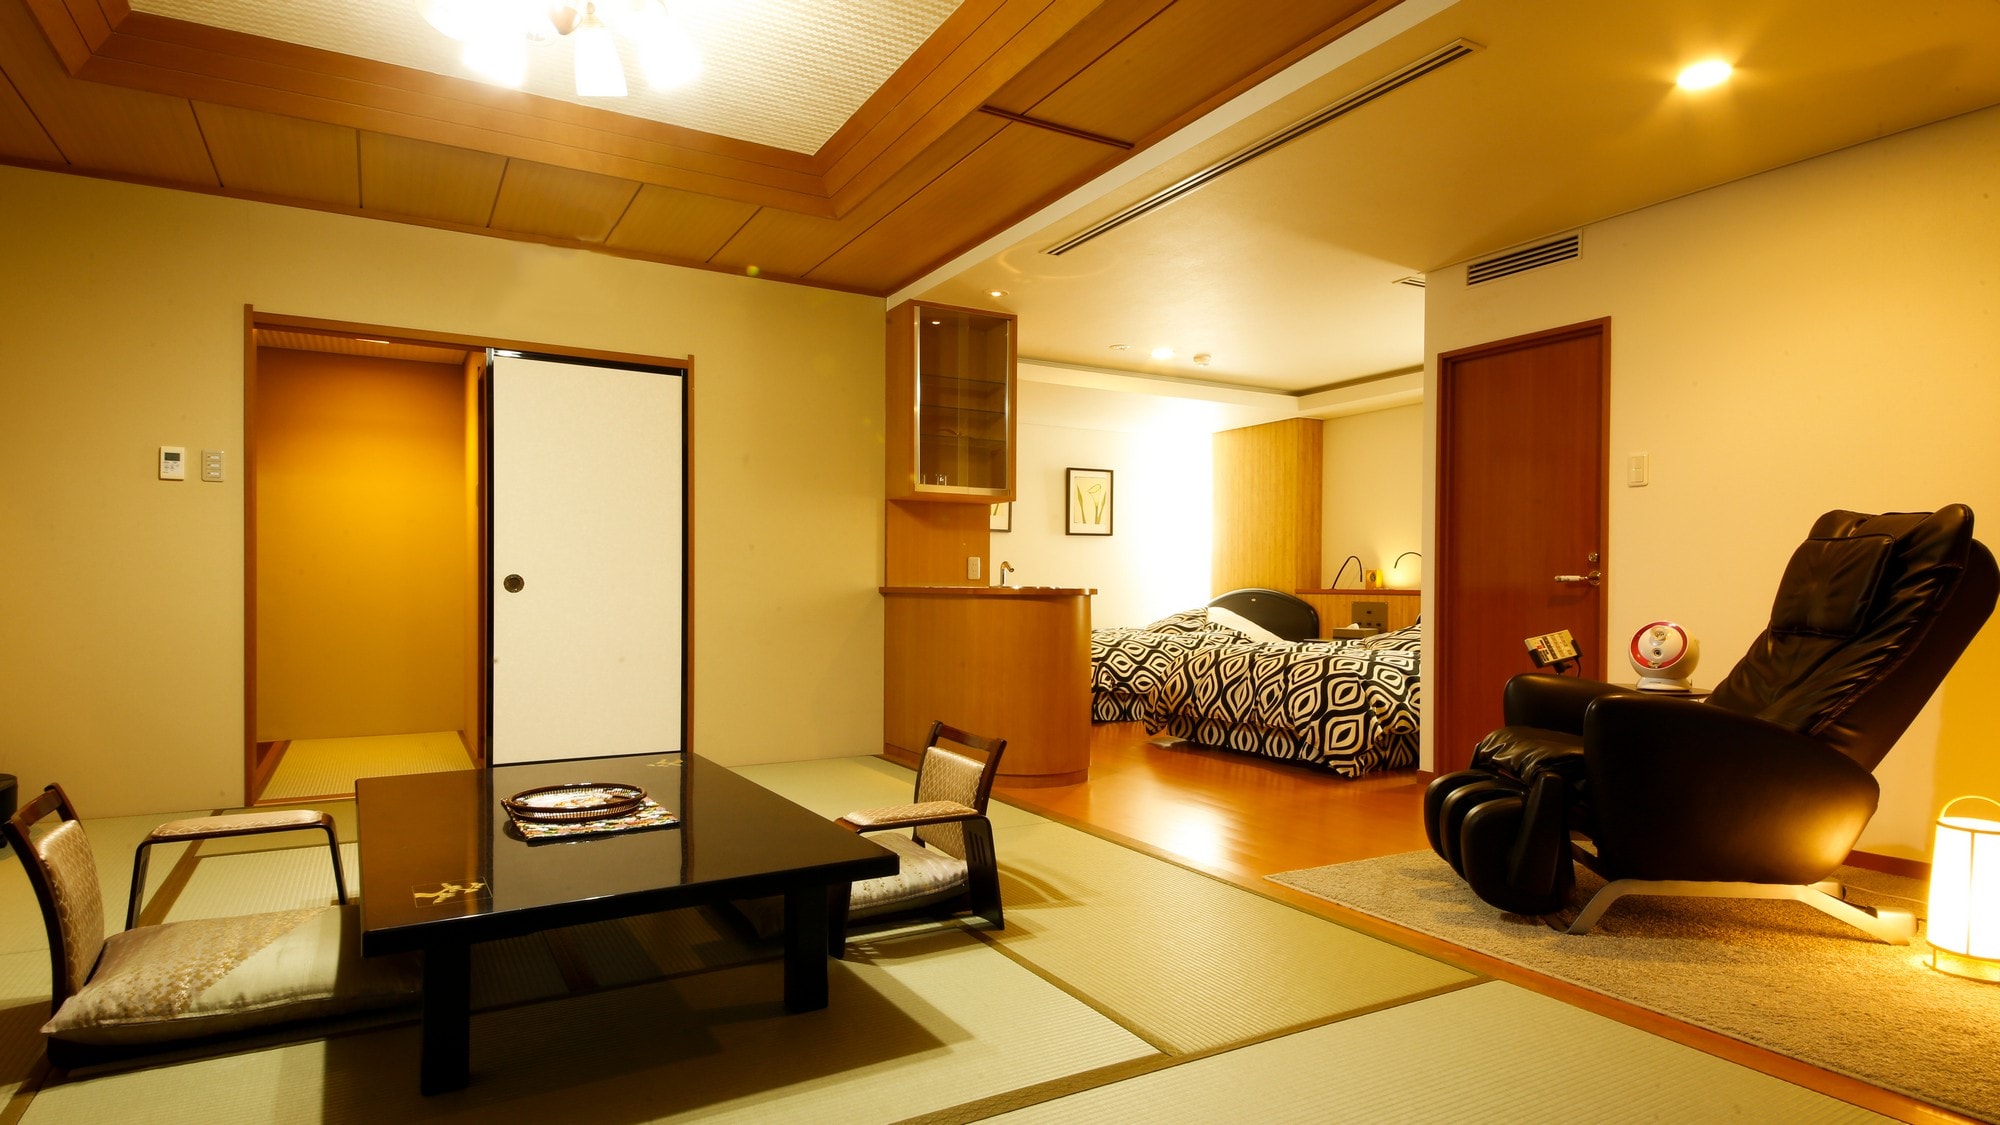 Suite dengan pemandian terbuka kamar bergaya Jepang-Barat-pemandangan Panorama menghadap ke kota sumber air panas.Dua tempat tidur besar di kamar tidur. Kursi pijat